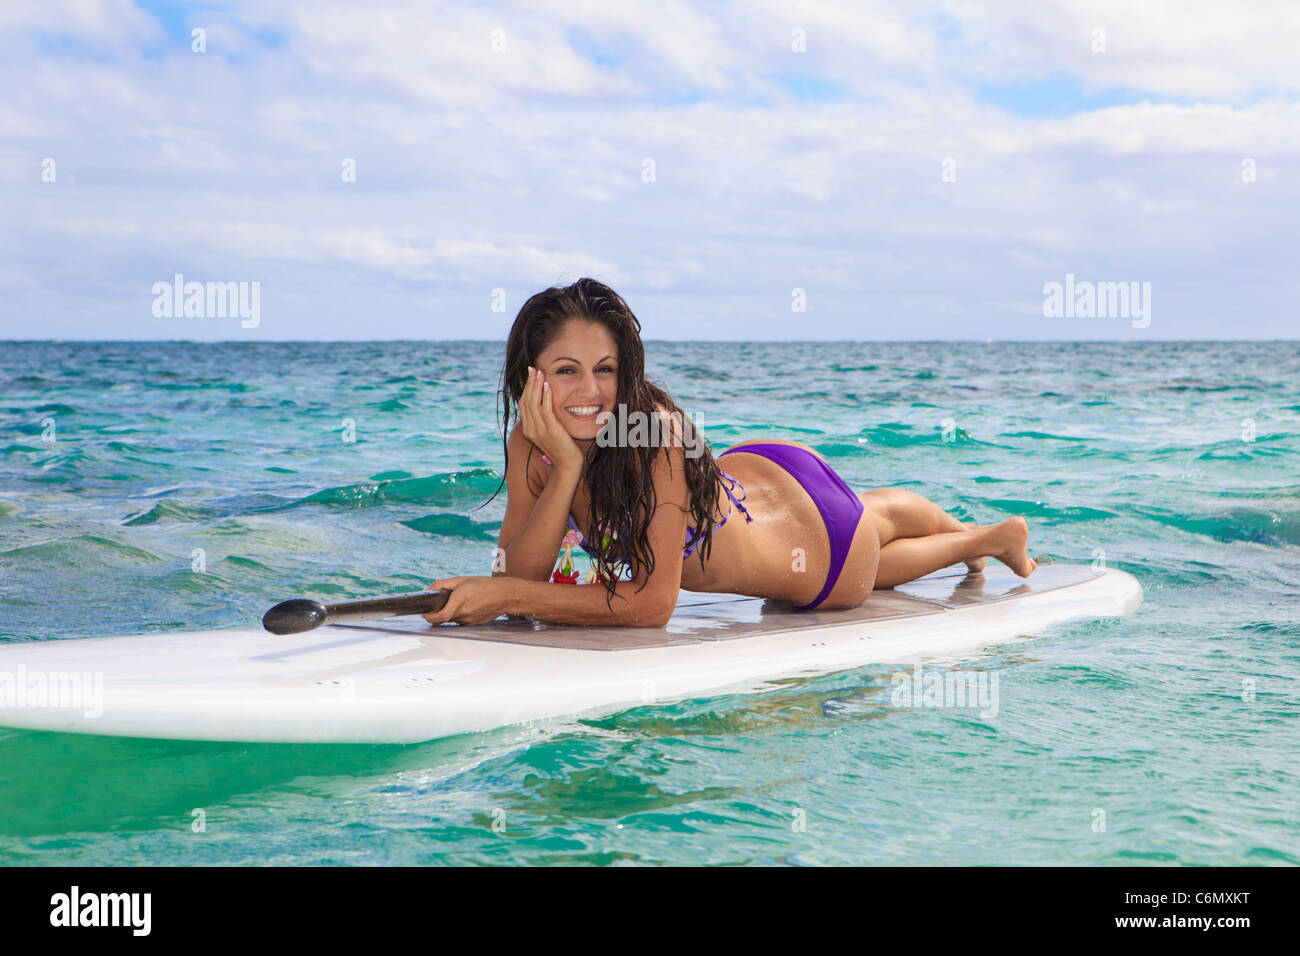 Belle brune en bikini sur son stand up paddle board à Hawaï Banque D'Images